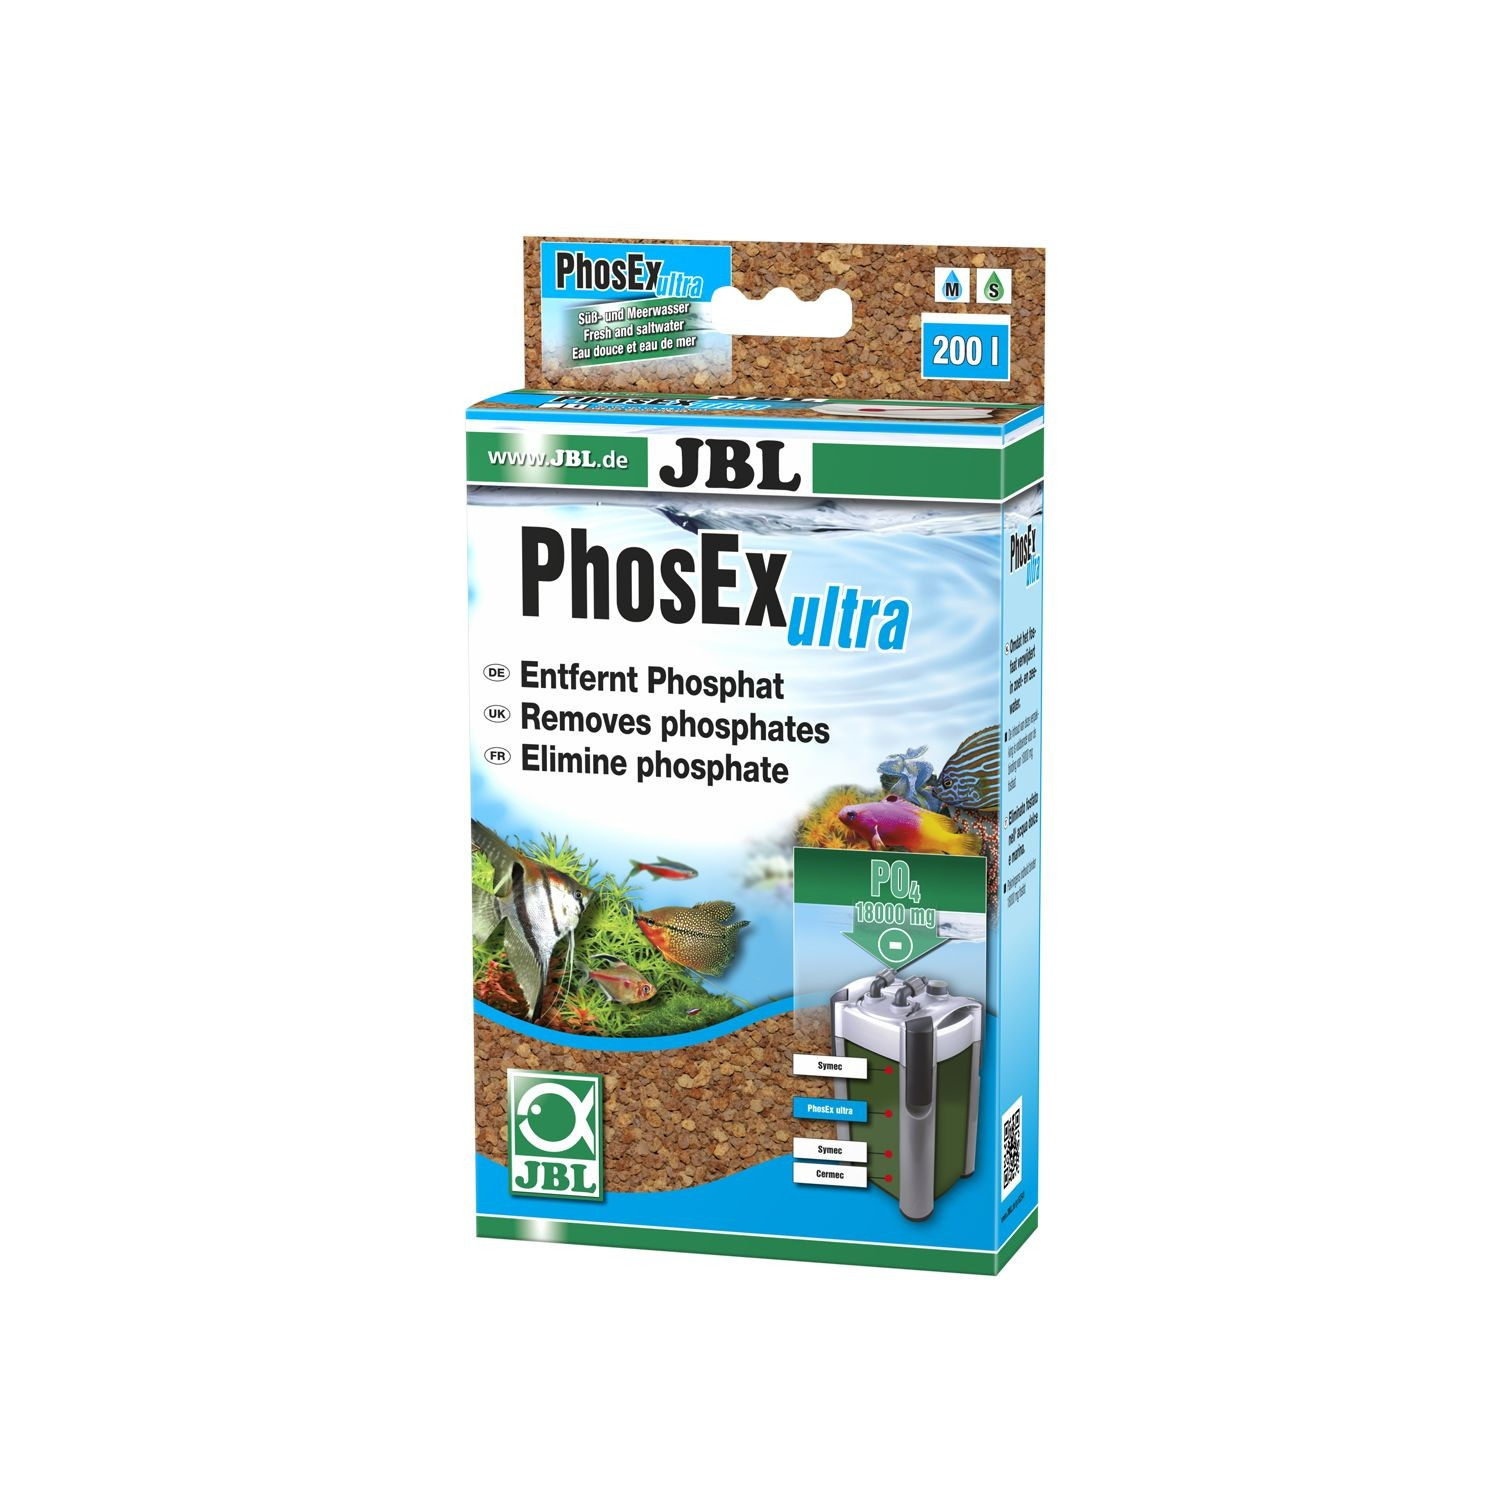 JBL PhosEx ultra Masa filtrante para eliminar el fosfato